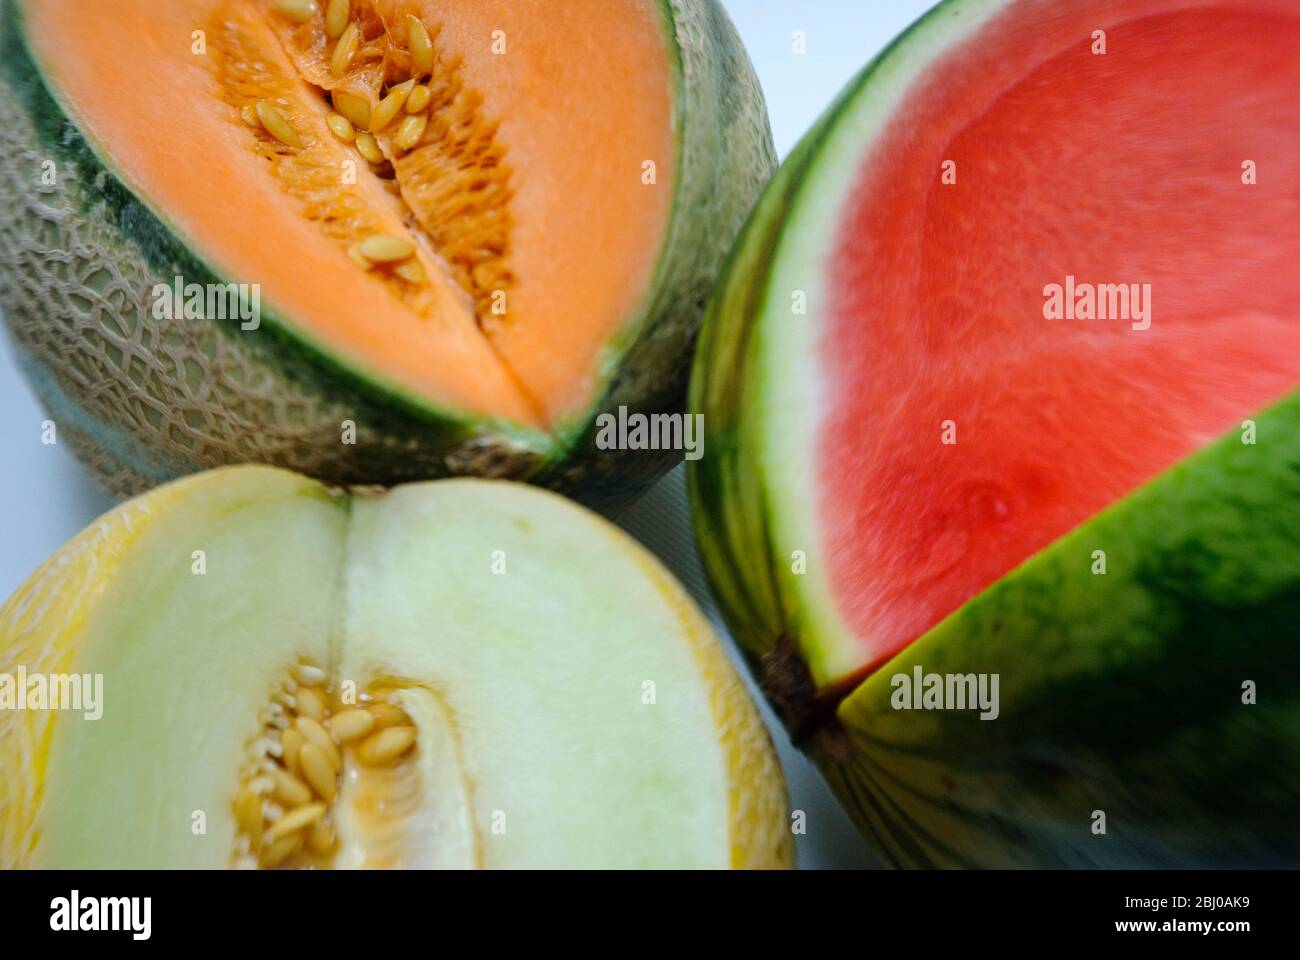 Drei verschiedene Wassermelonen, aufgeschnitten, um Farben zu sehen - Stockfoto